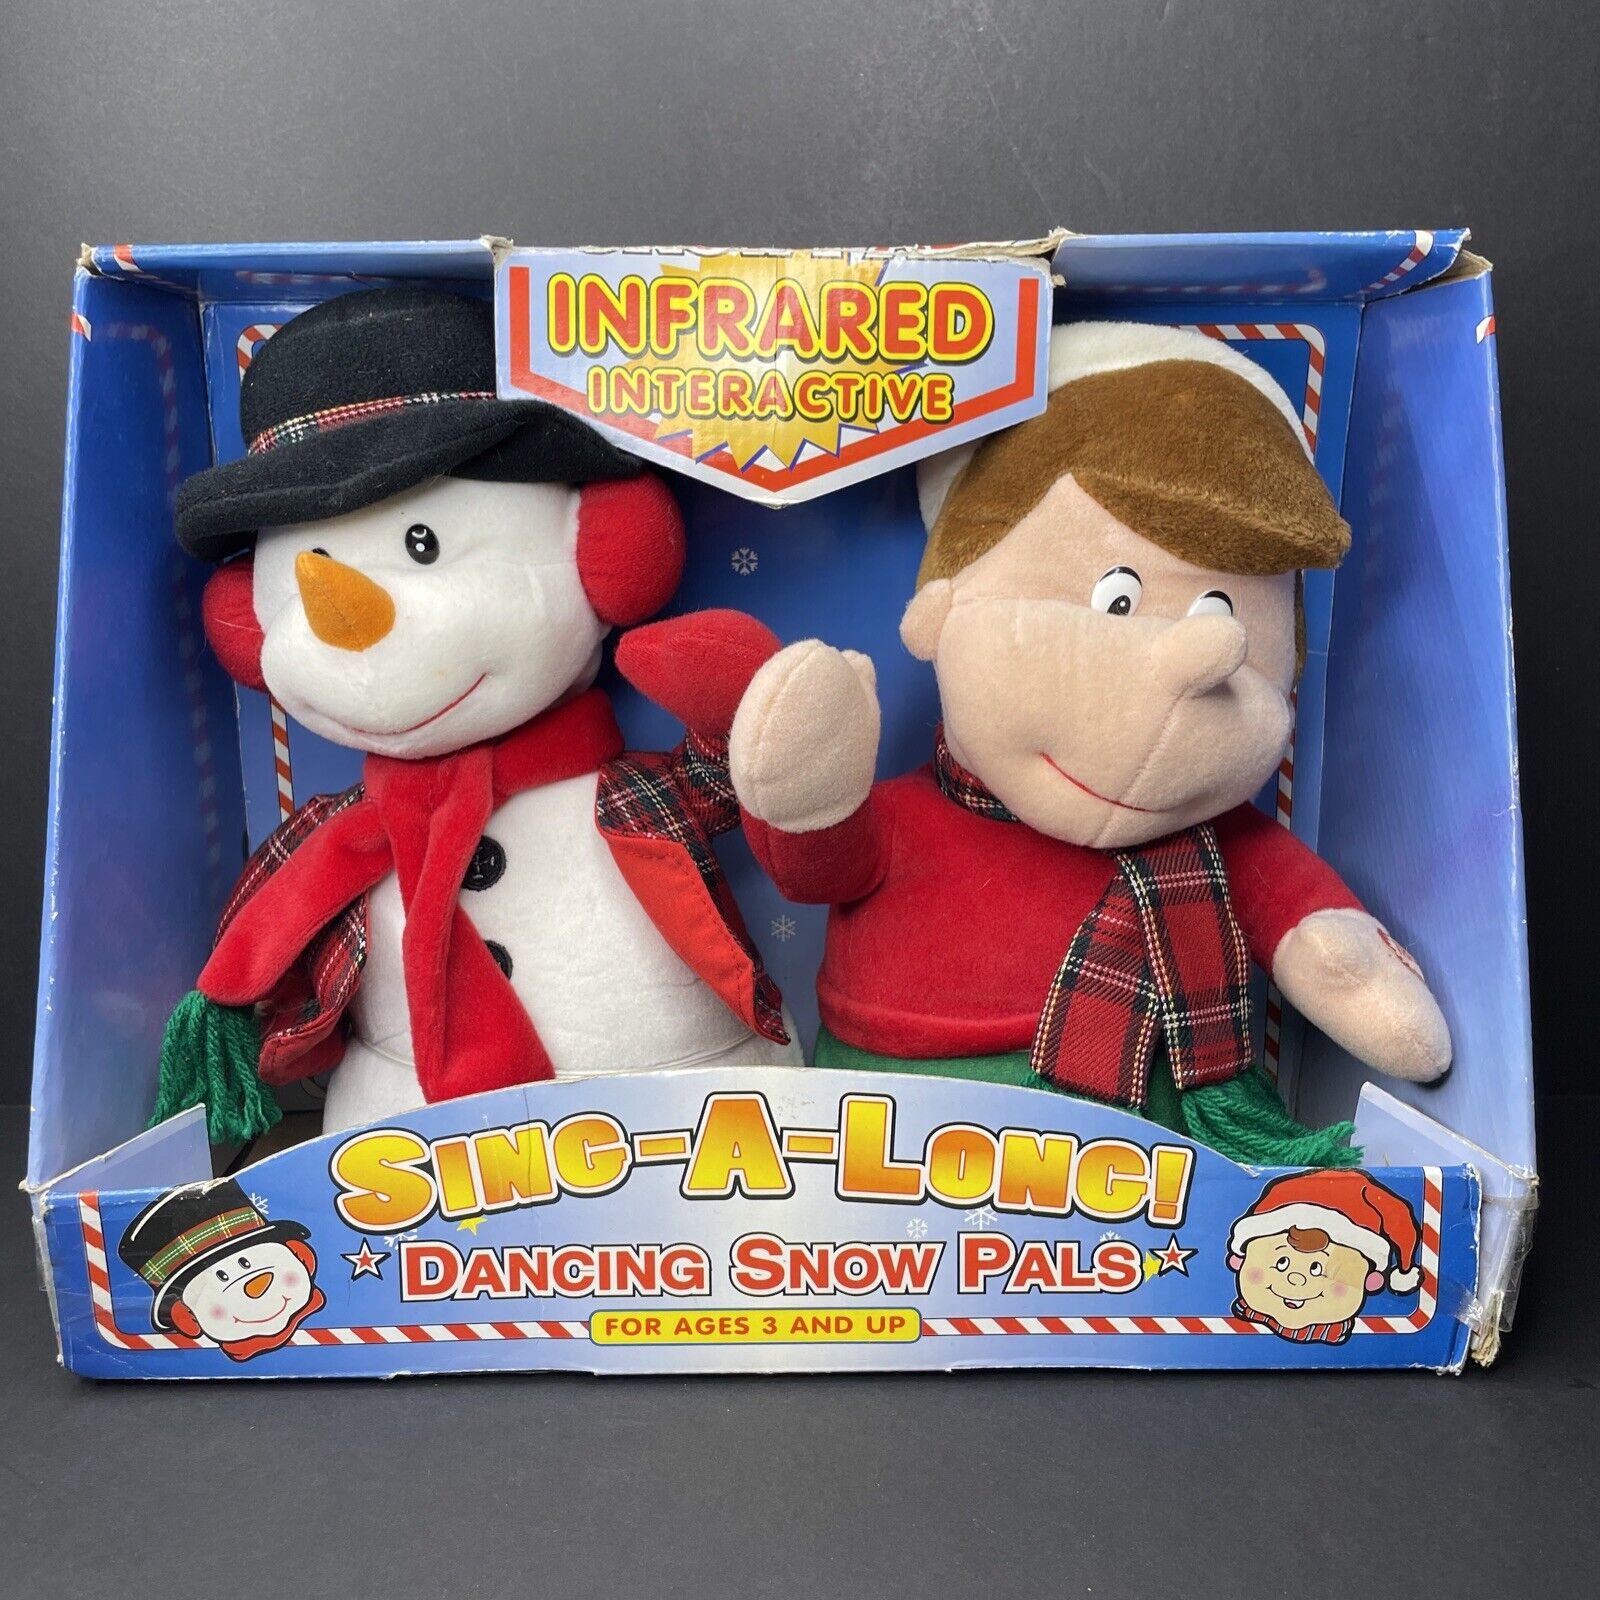 Vintage 1990s Avon Kids Sing Along Snow Pals Plush Boy & Snowman w/ Original Box